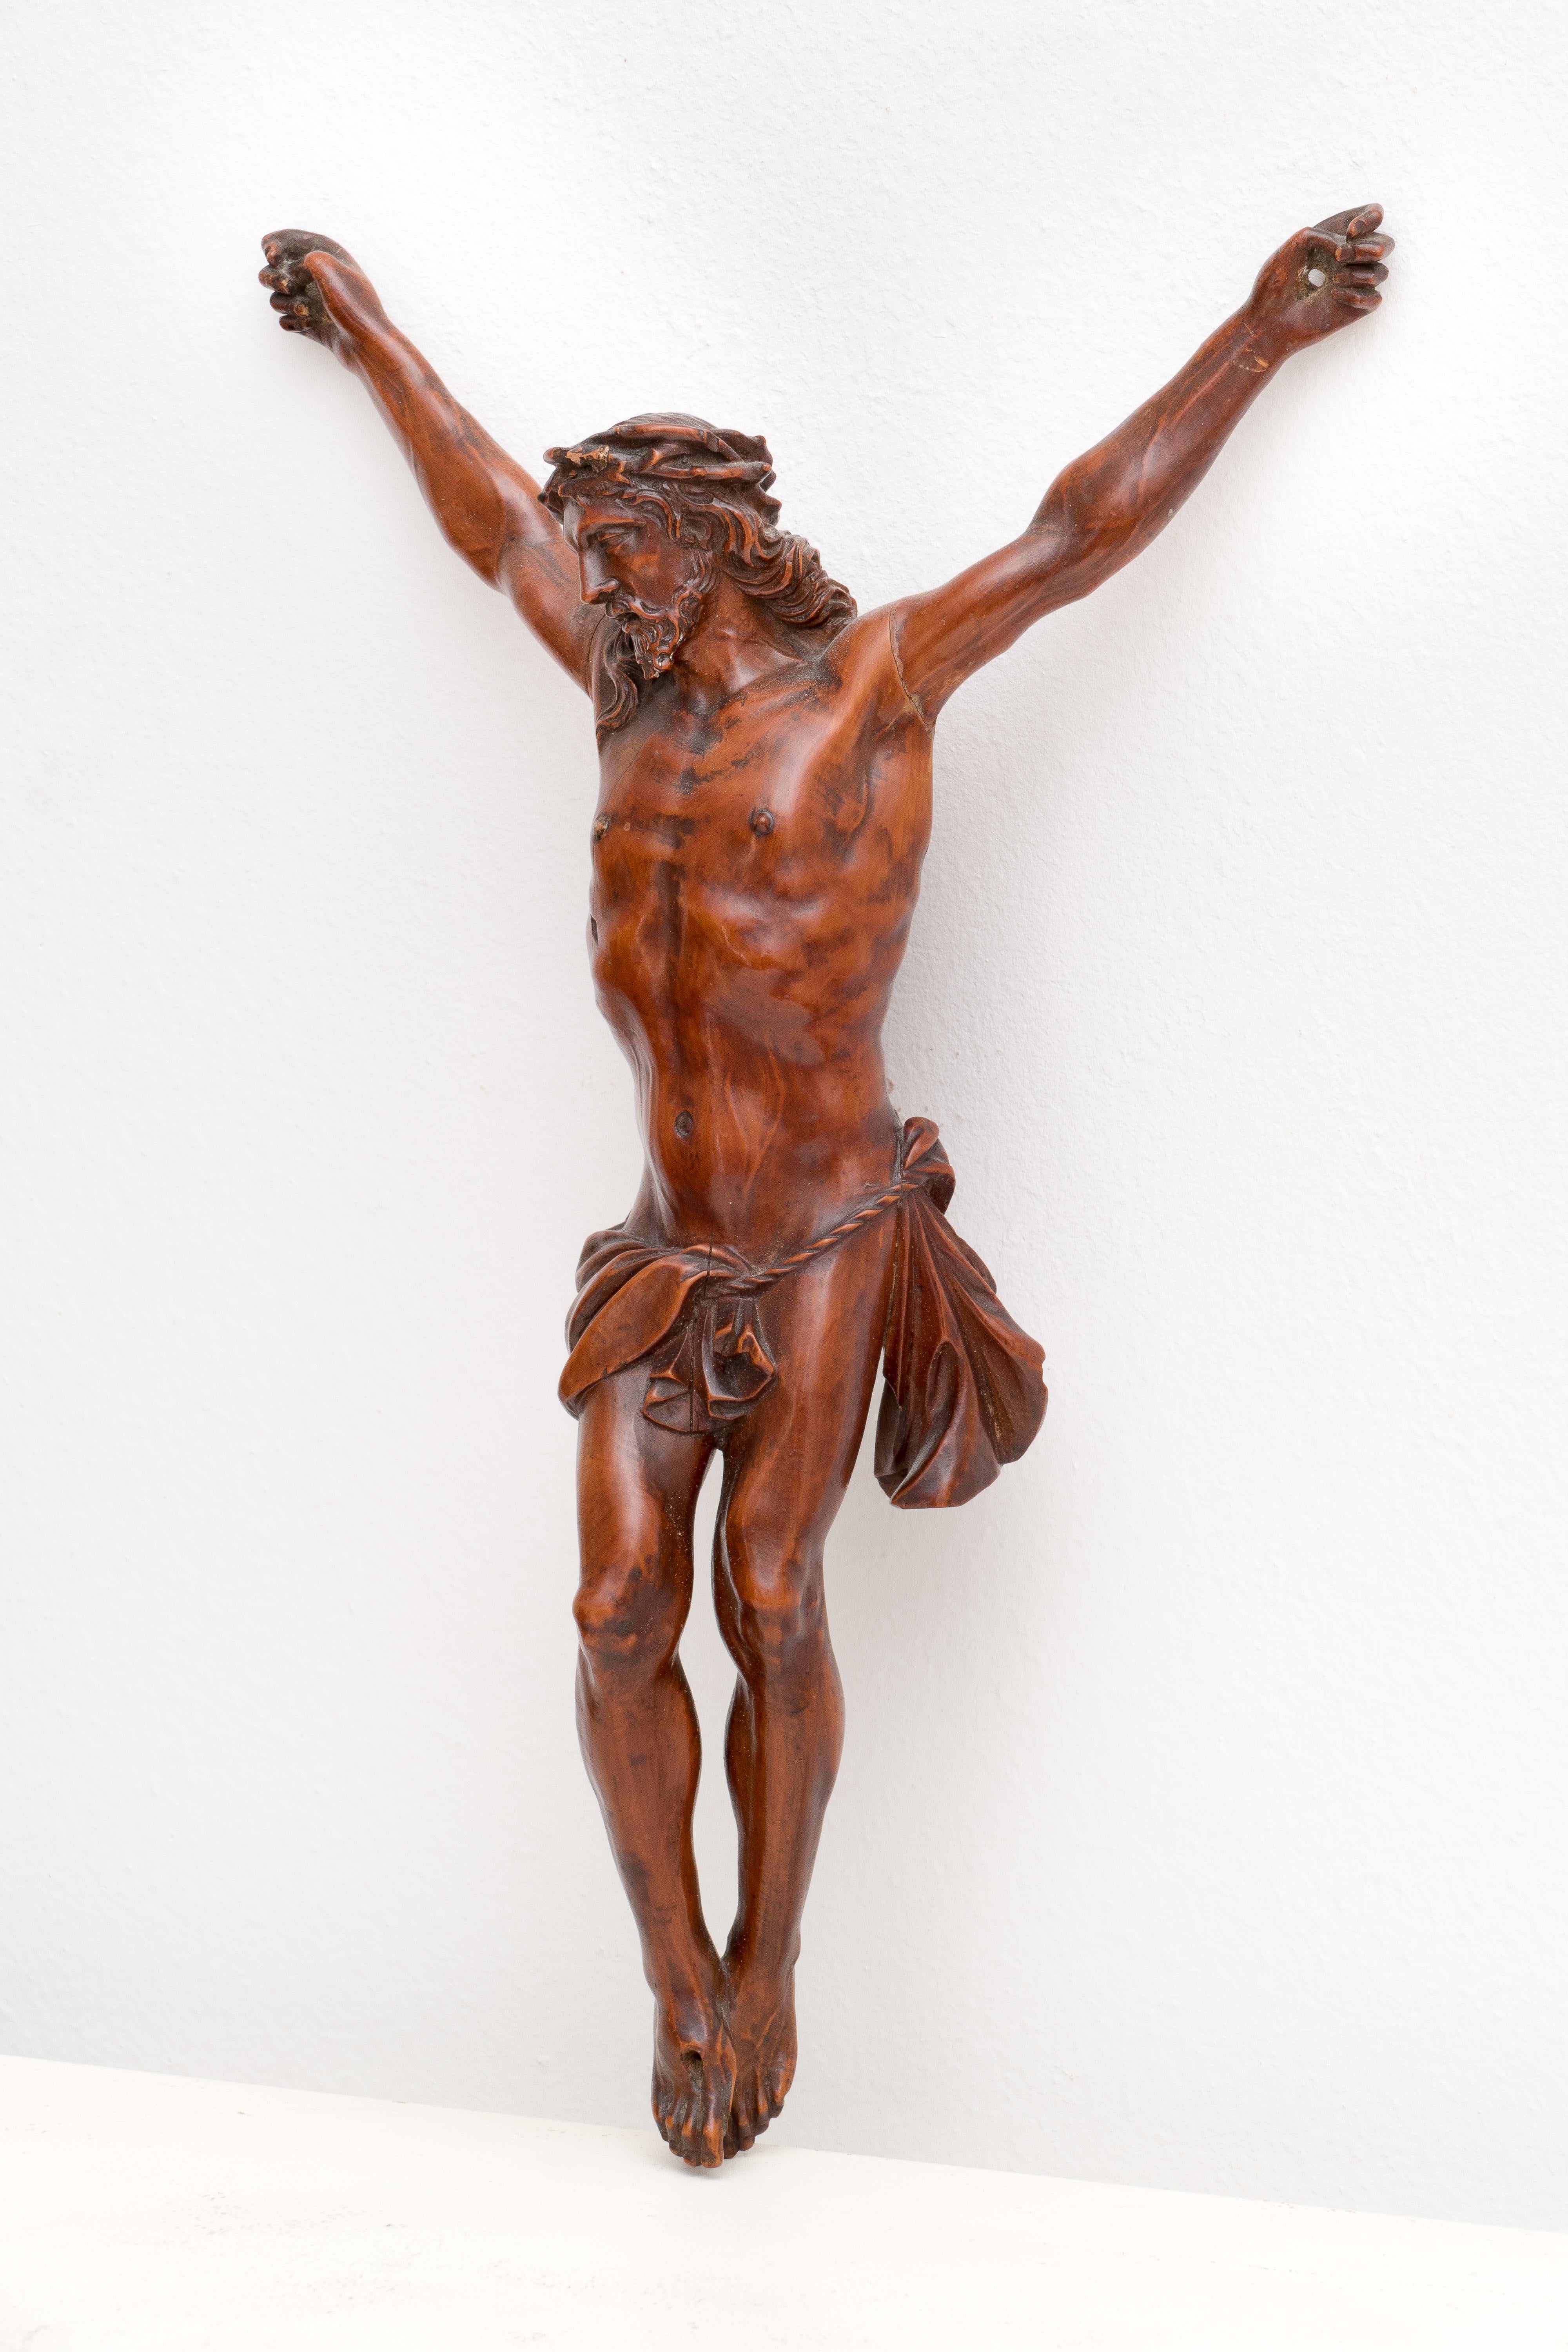 ANTIQUE italienische BOXWOOD SculPTURE OF CHRIST aus dem 18. Jh. – Sculpture von Unknown